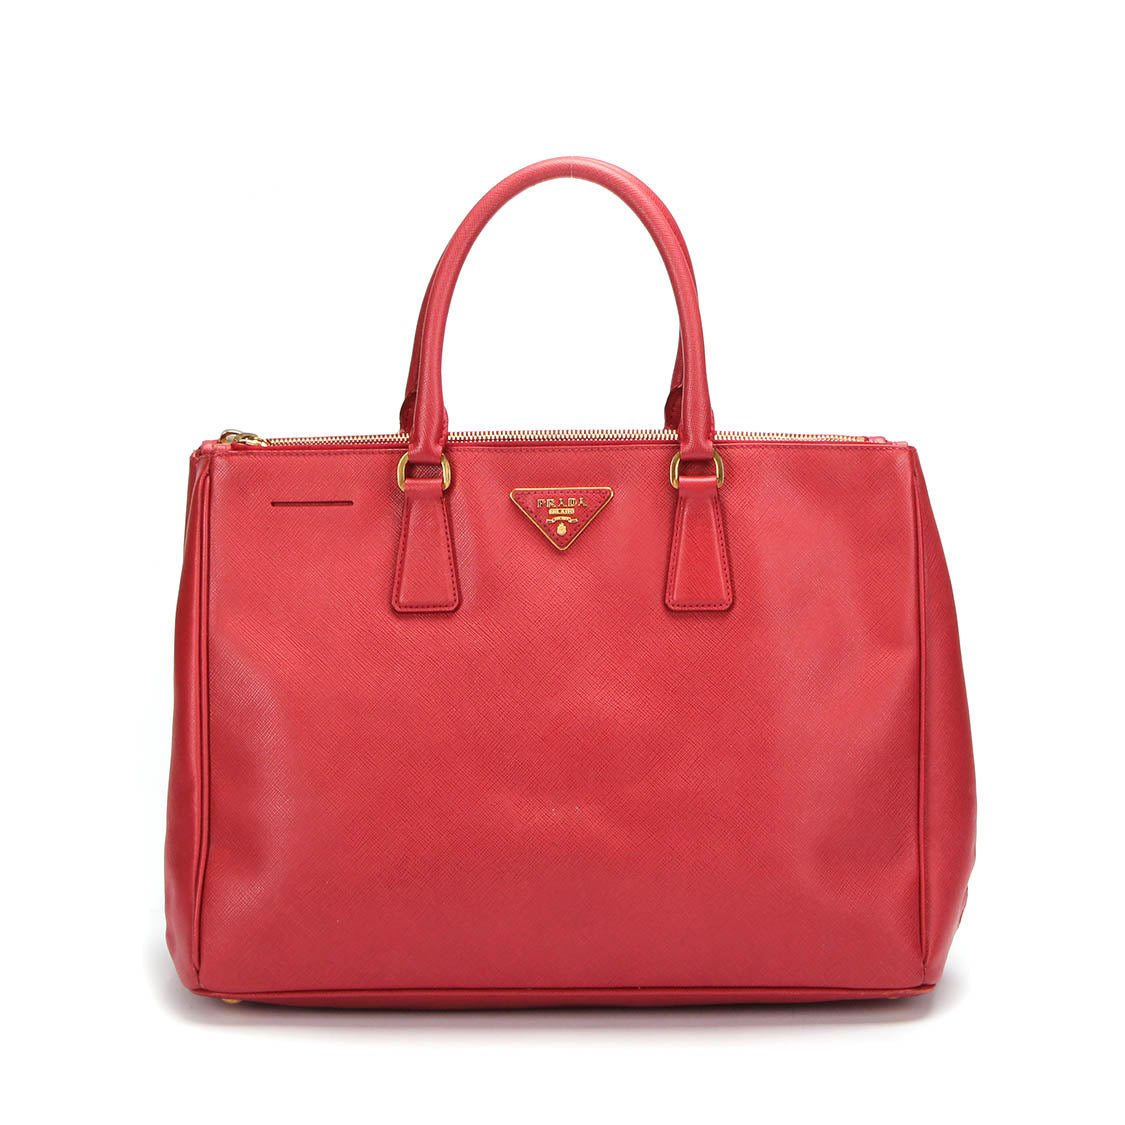 Prada Saffiano Galleria Leather Tote Bag in Good condition